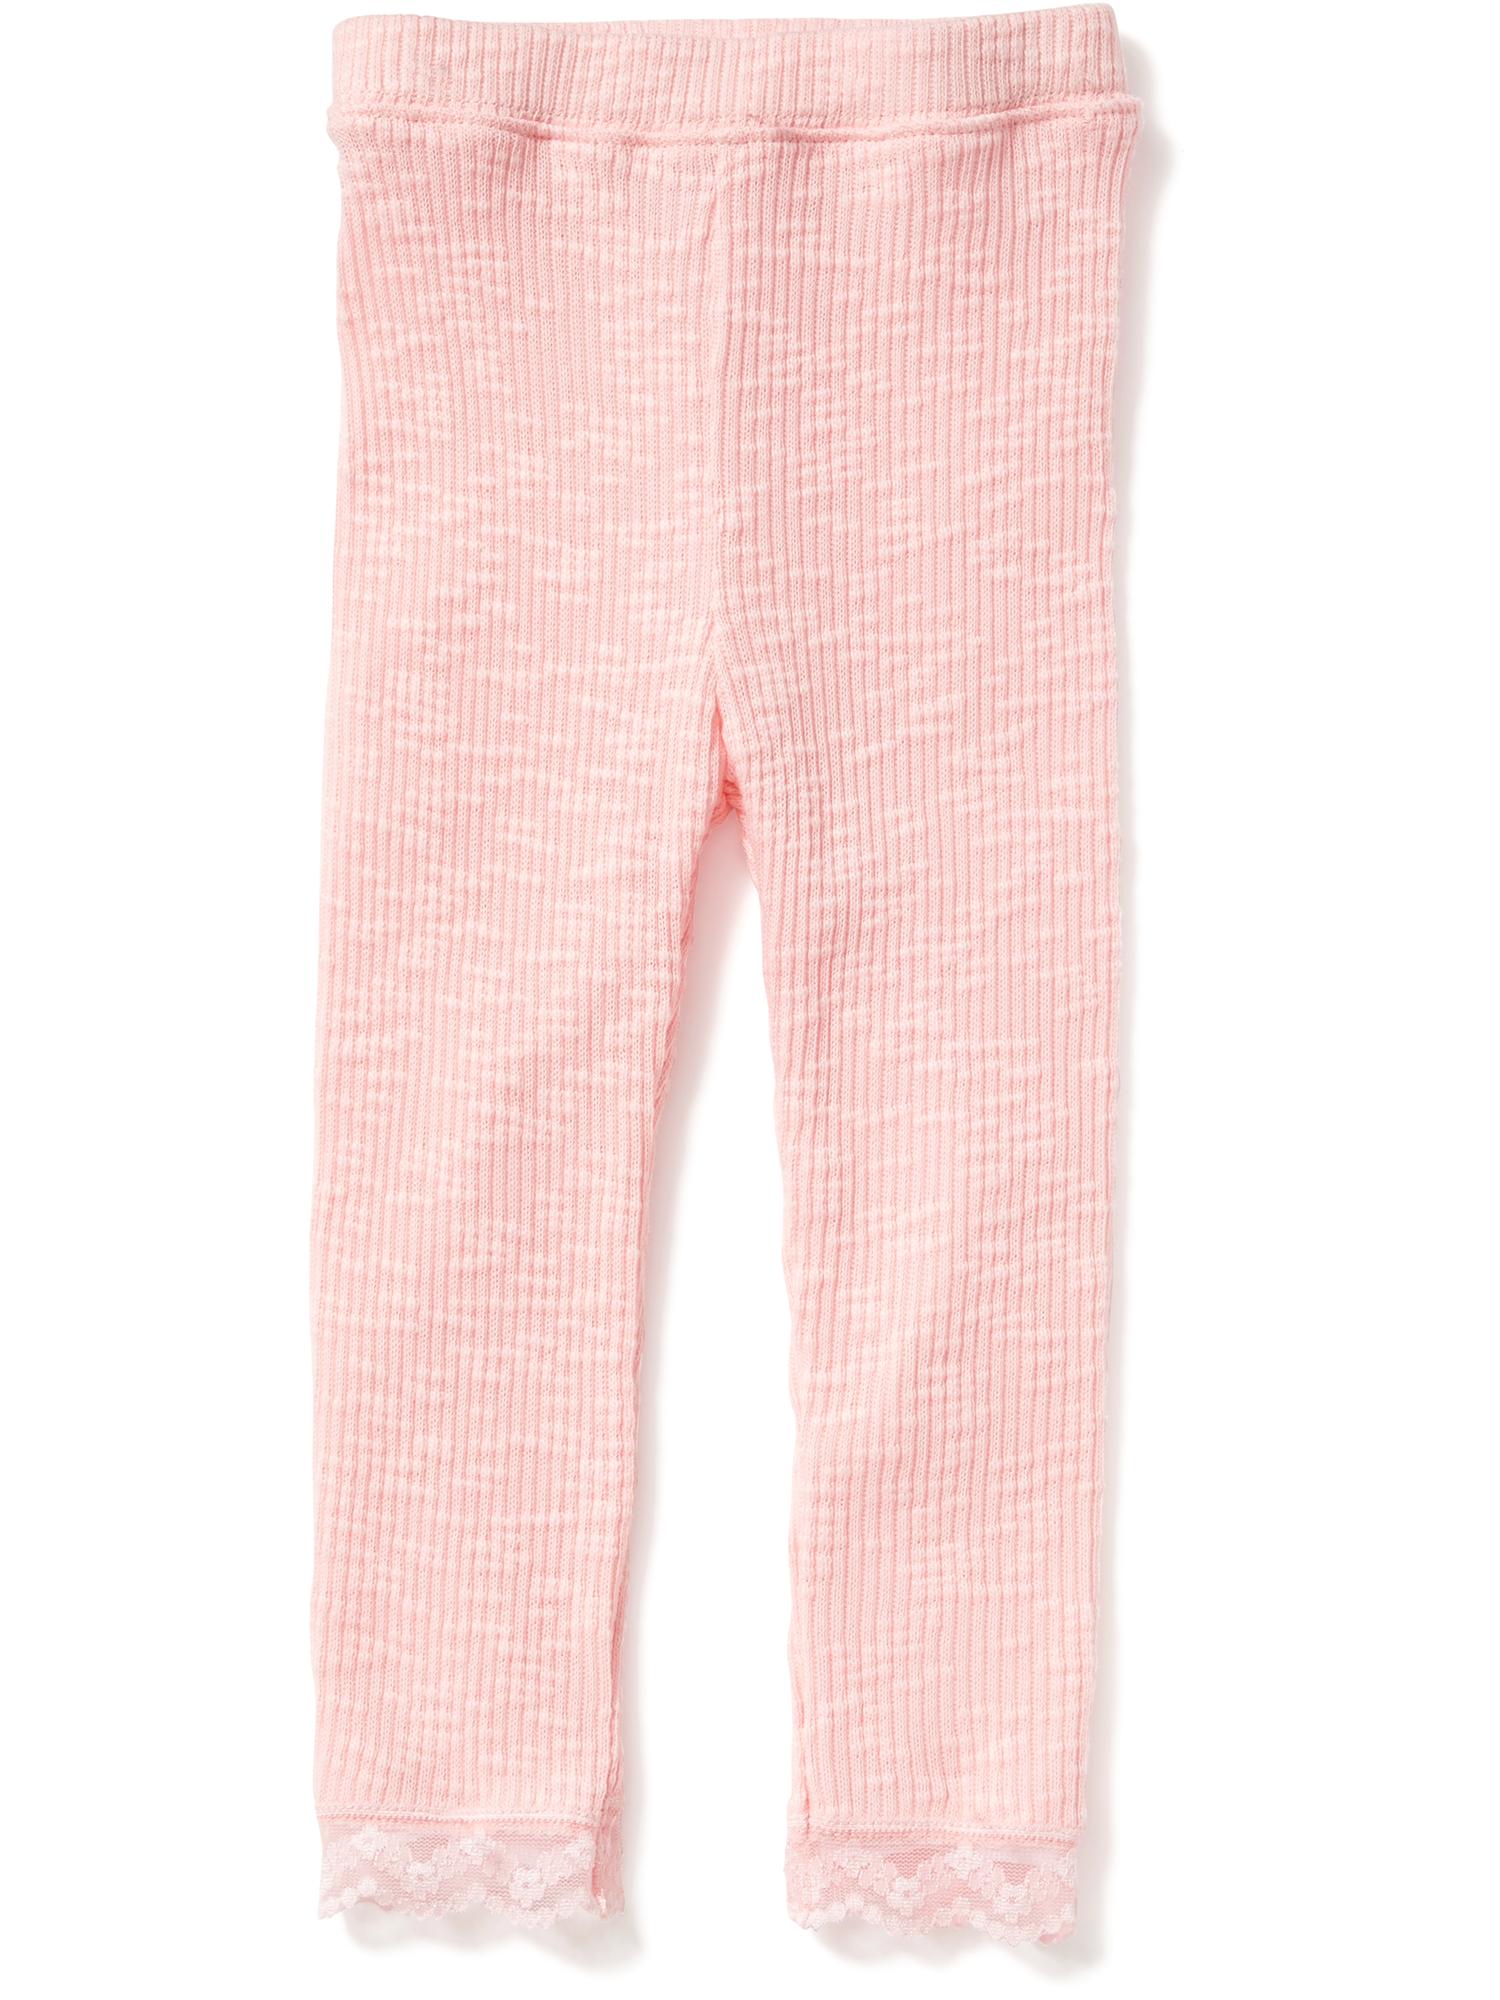 Rib-Knit Leggings for Toddler Girls